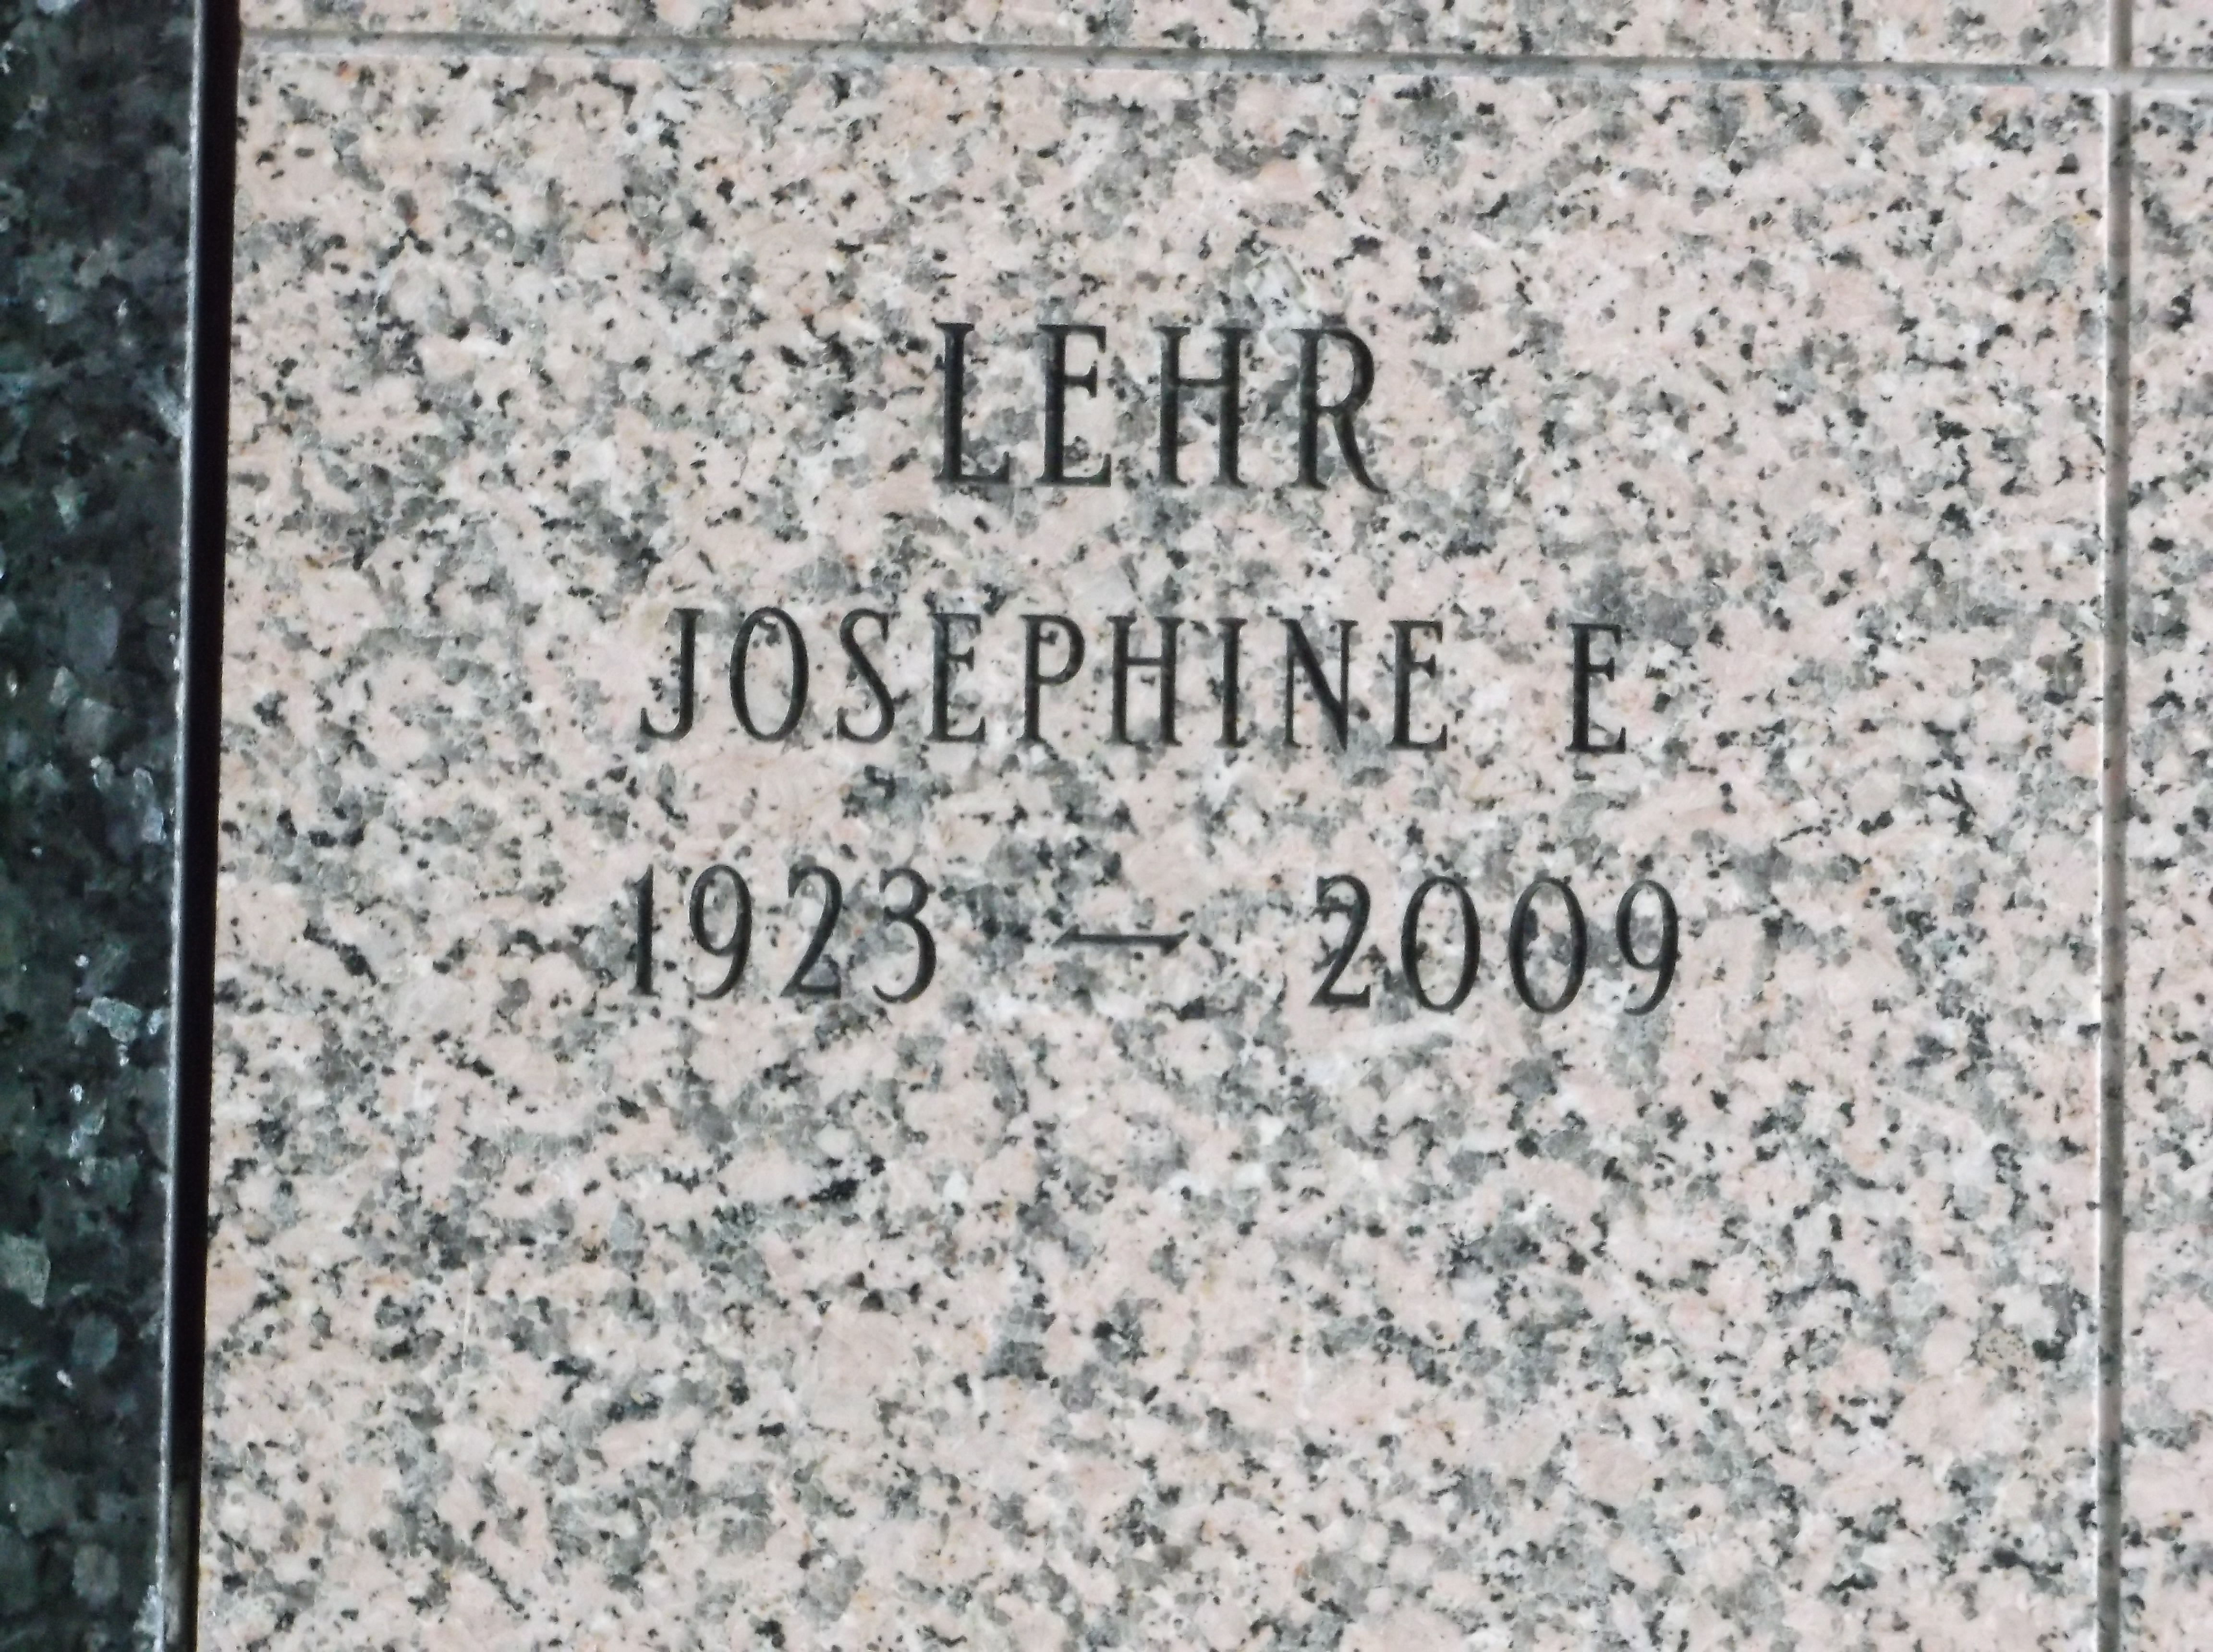 Josephine E Lehr